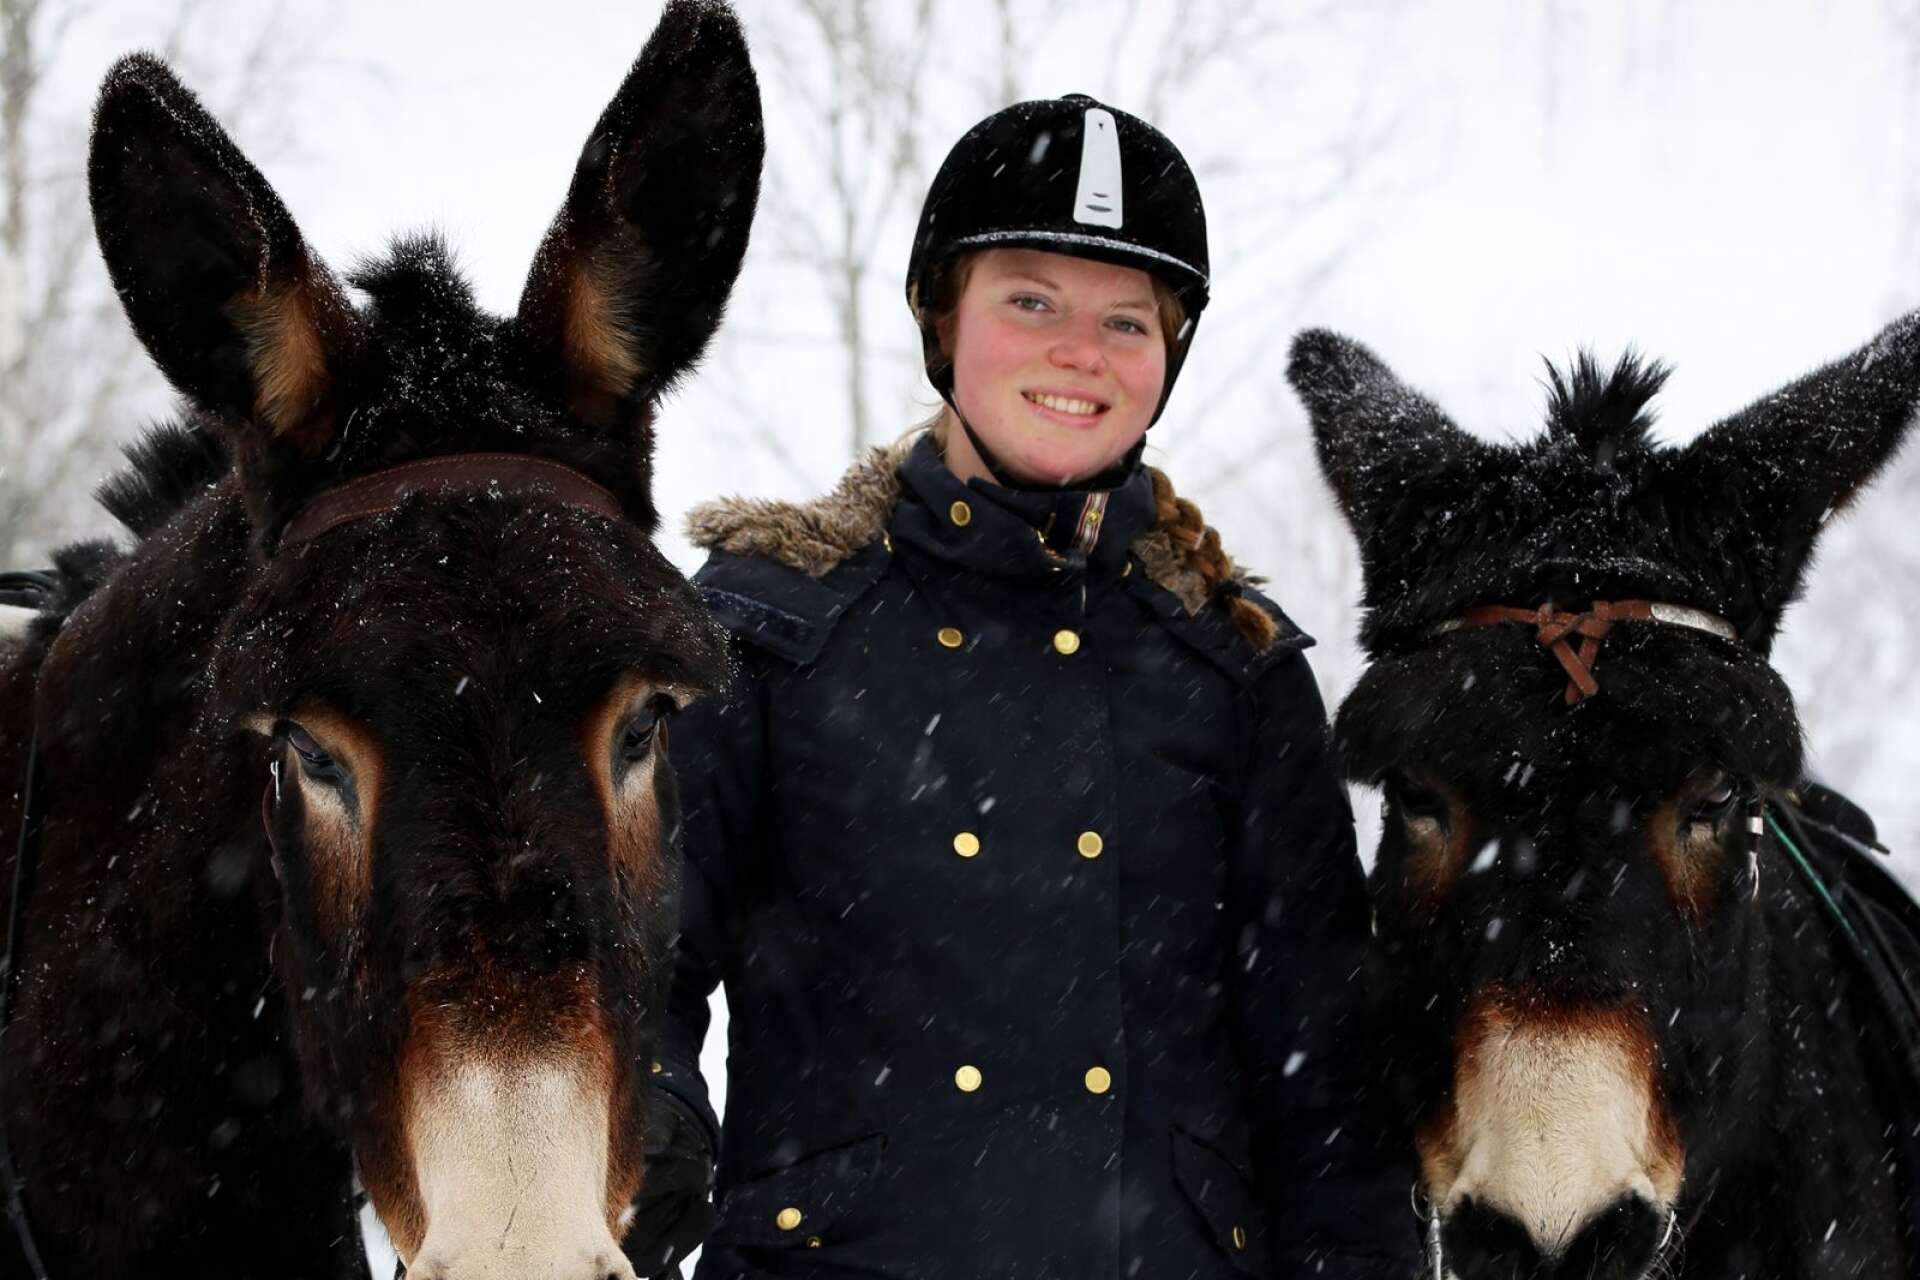 För den som har tröttnat eller inte har modet för turridning på häst kan åsnor vara ett tryggare alternativ, menar Charlotte Steen.